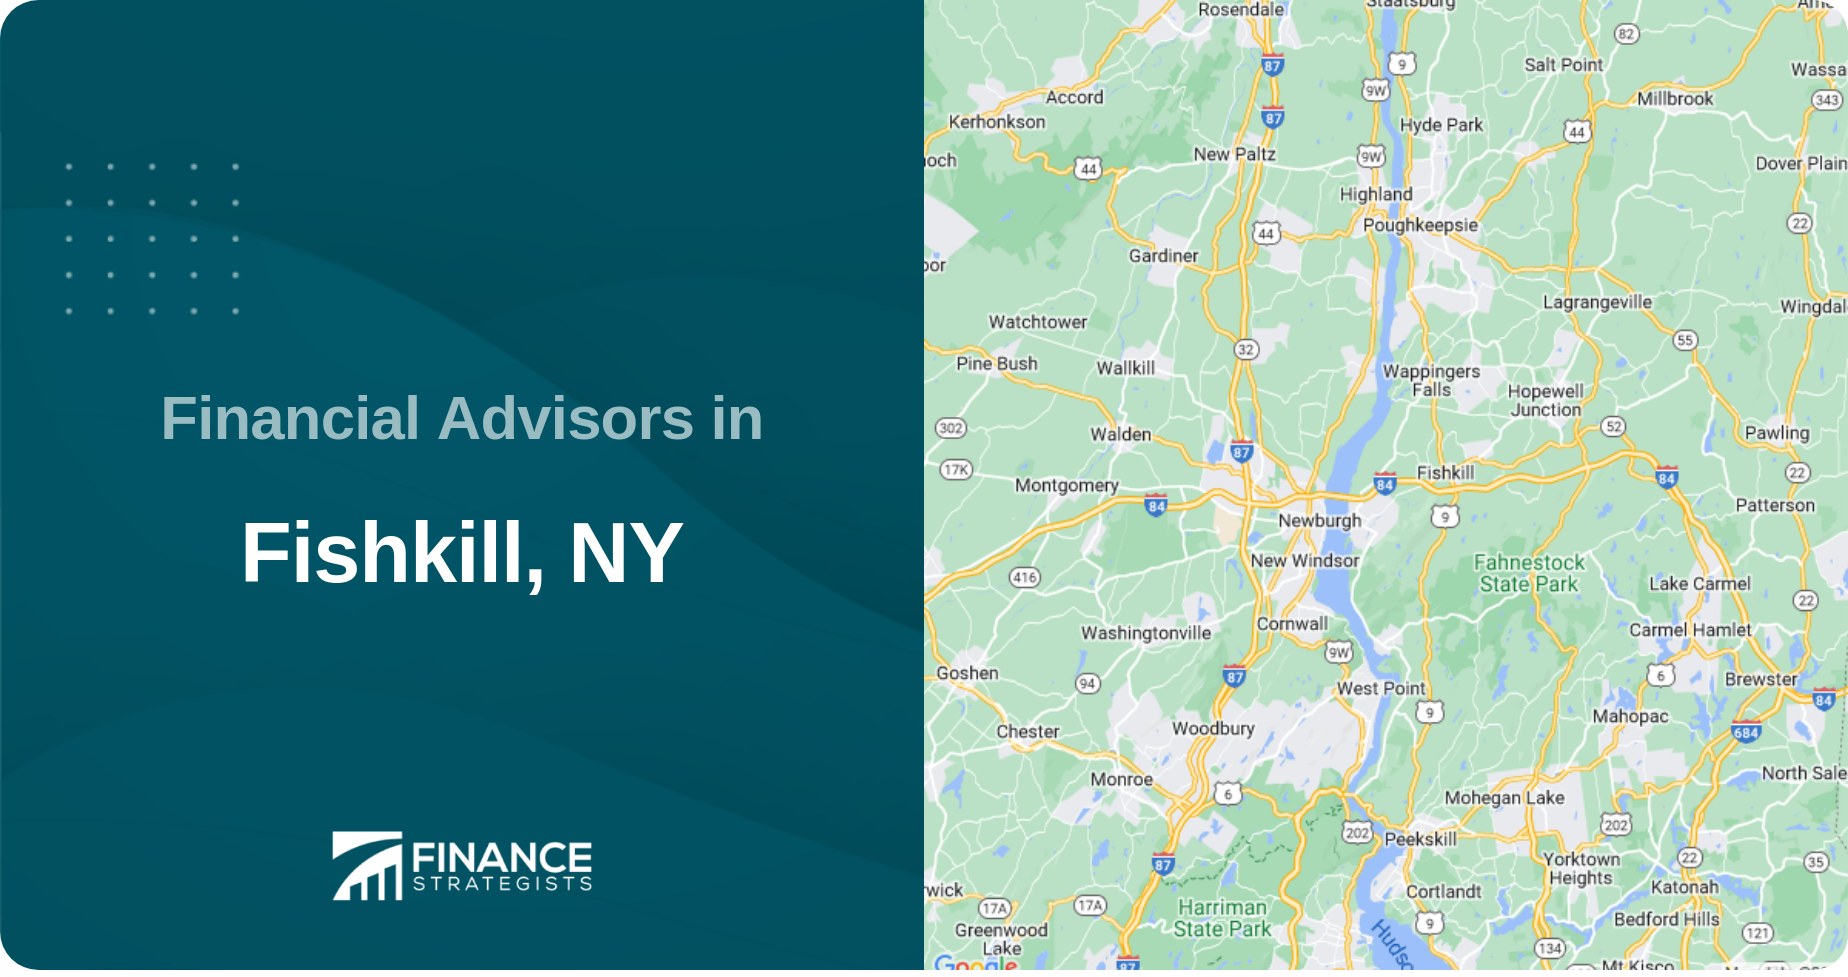 Financial Advisors in Fishkill, NY